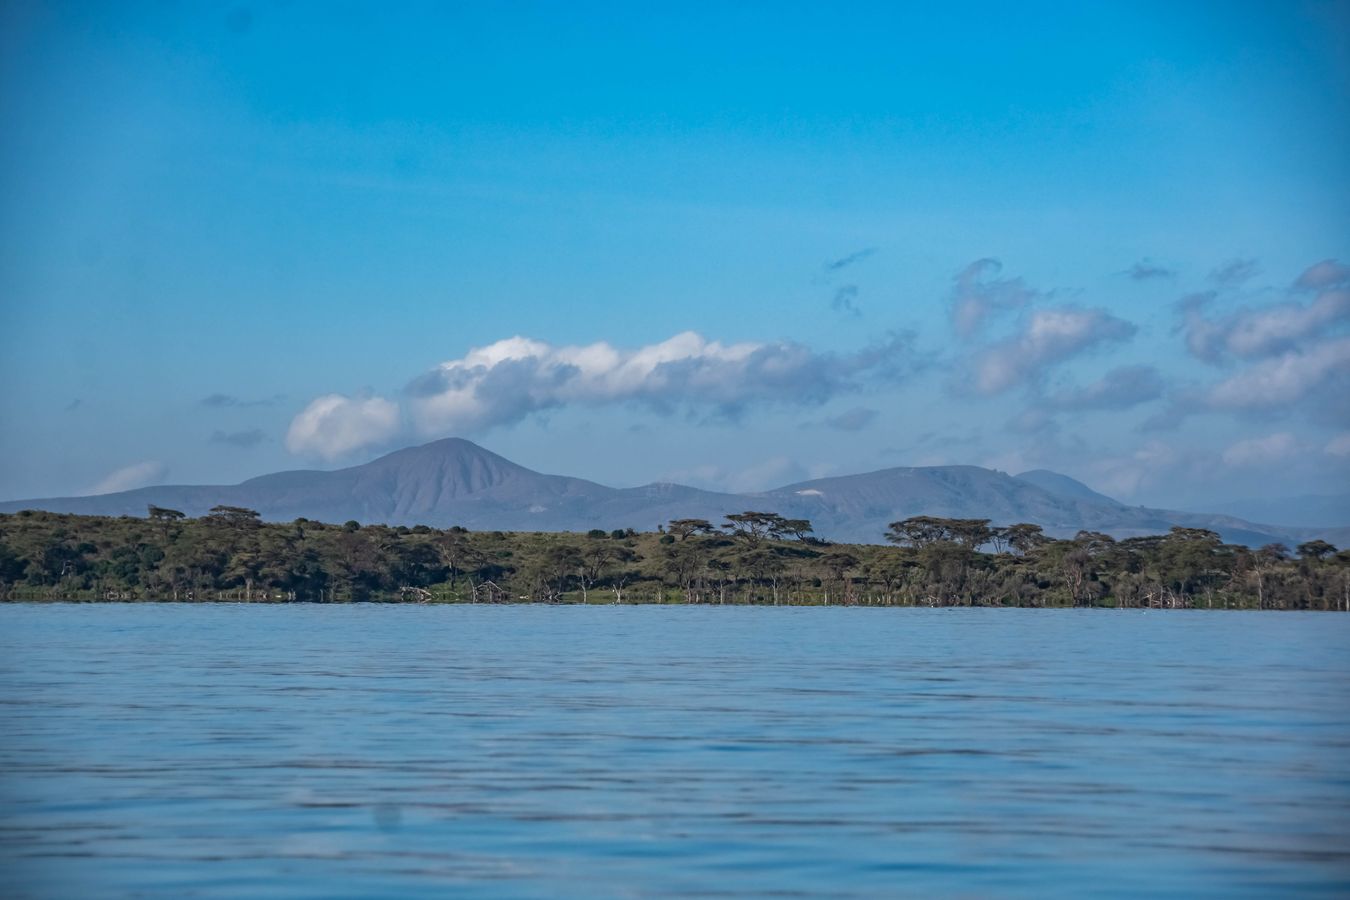 Lago Naivasha